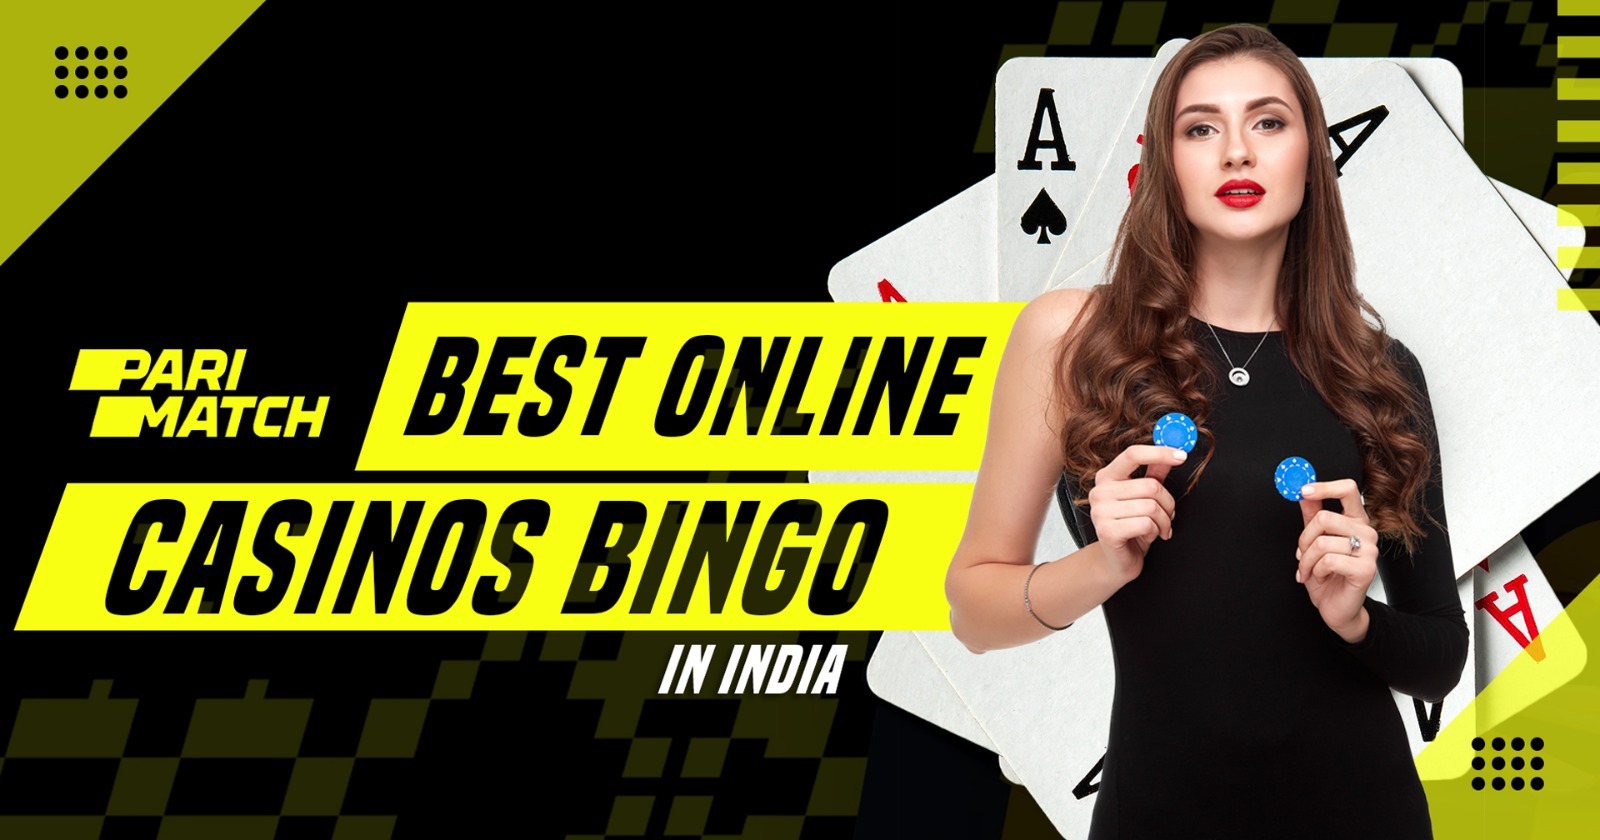 Best Online Casinos Bingo in India